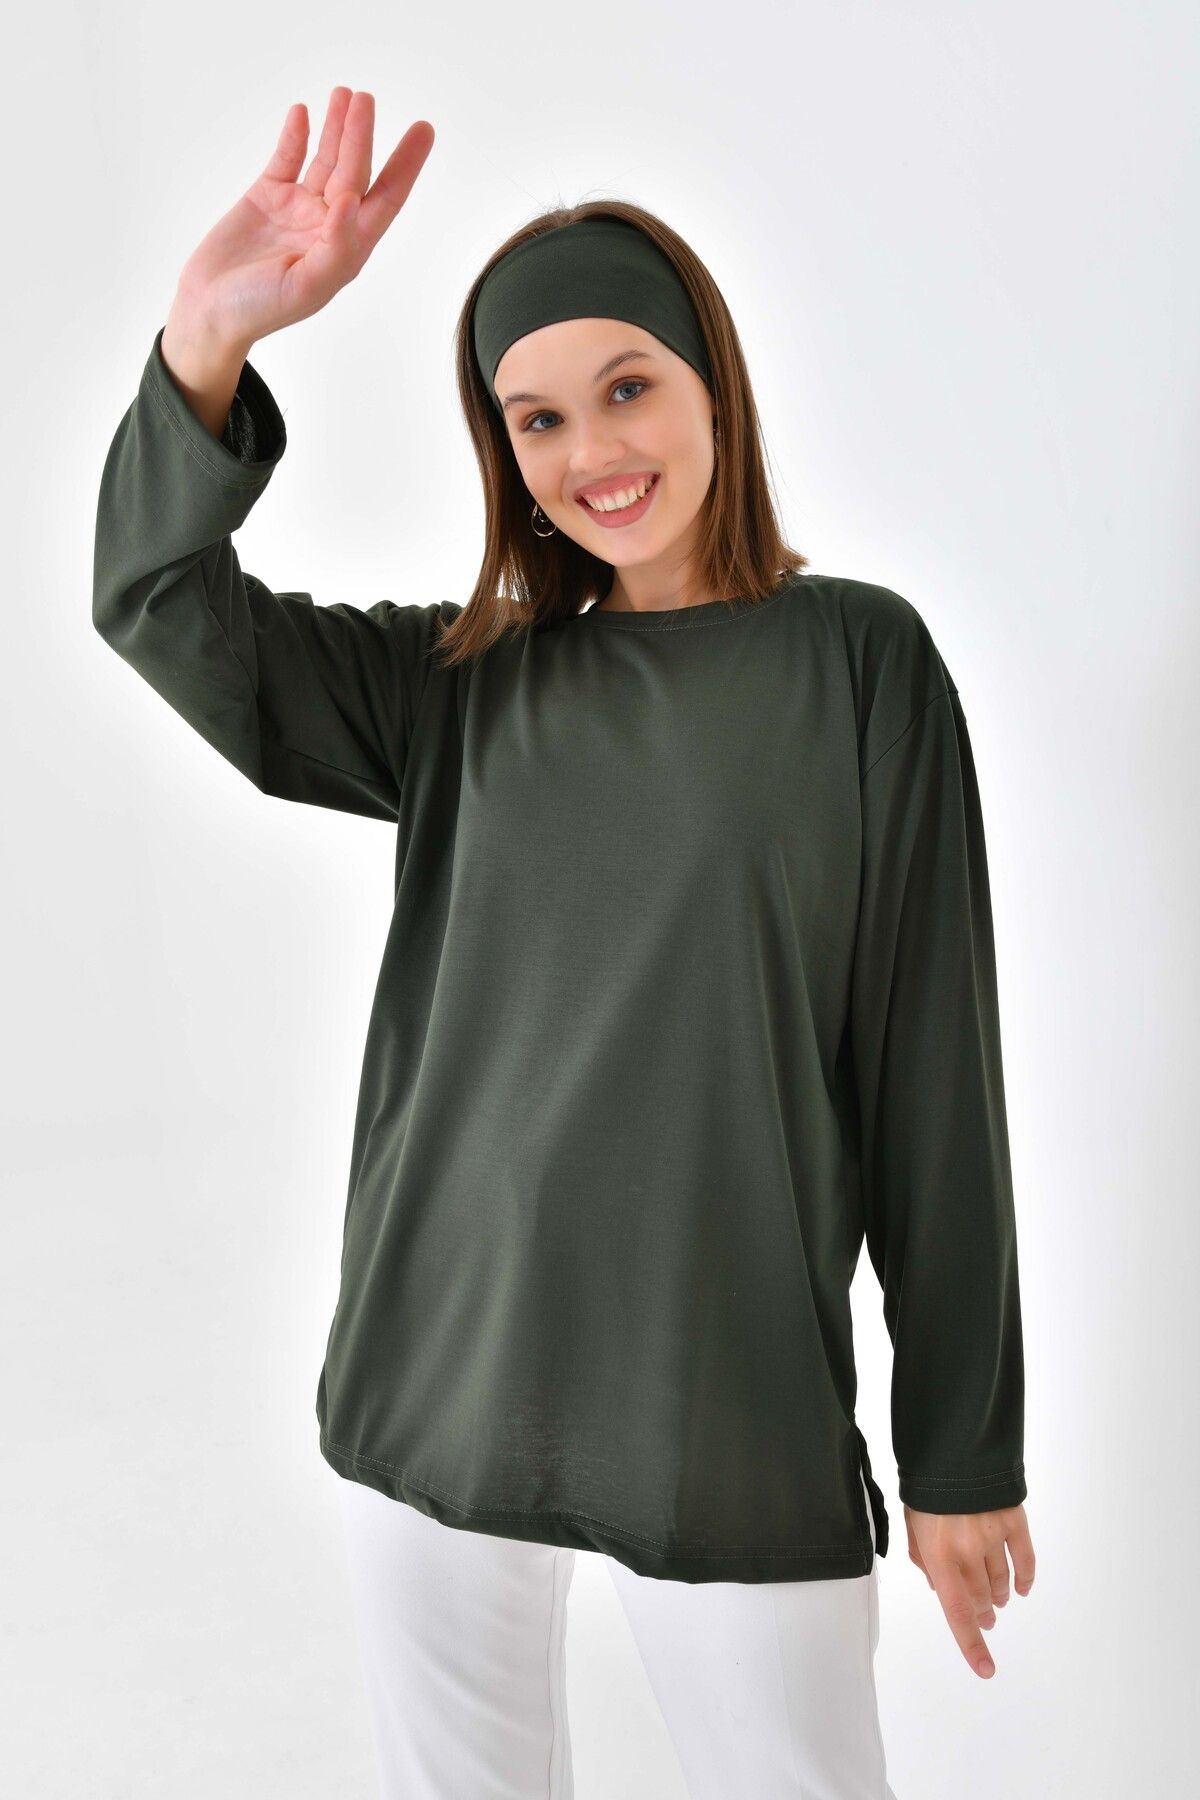 mirach Kaktüs Yeşili Pamuk Penye Tunik Uzun Kollu Bluz Tişört Üst Koyu Yeşil Haki